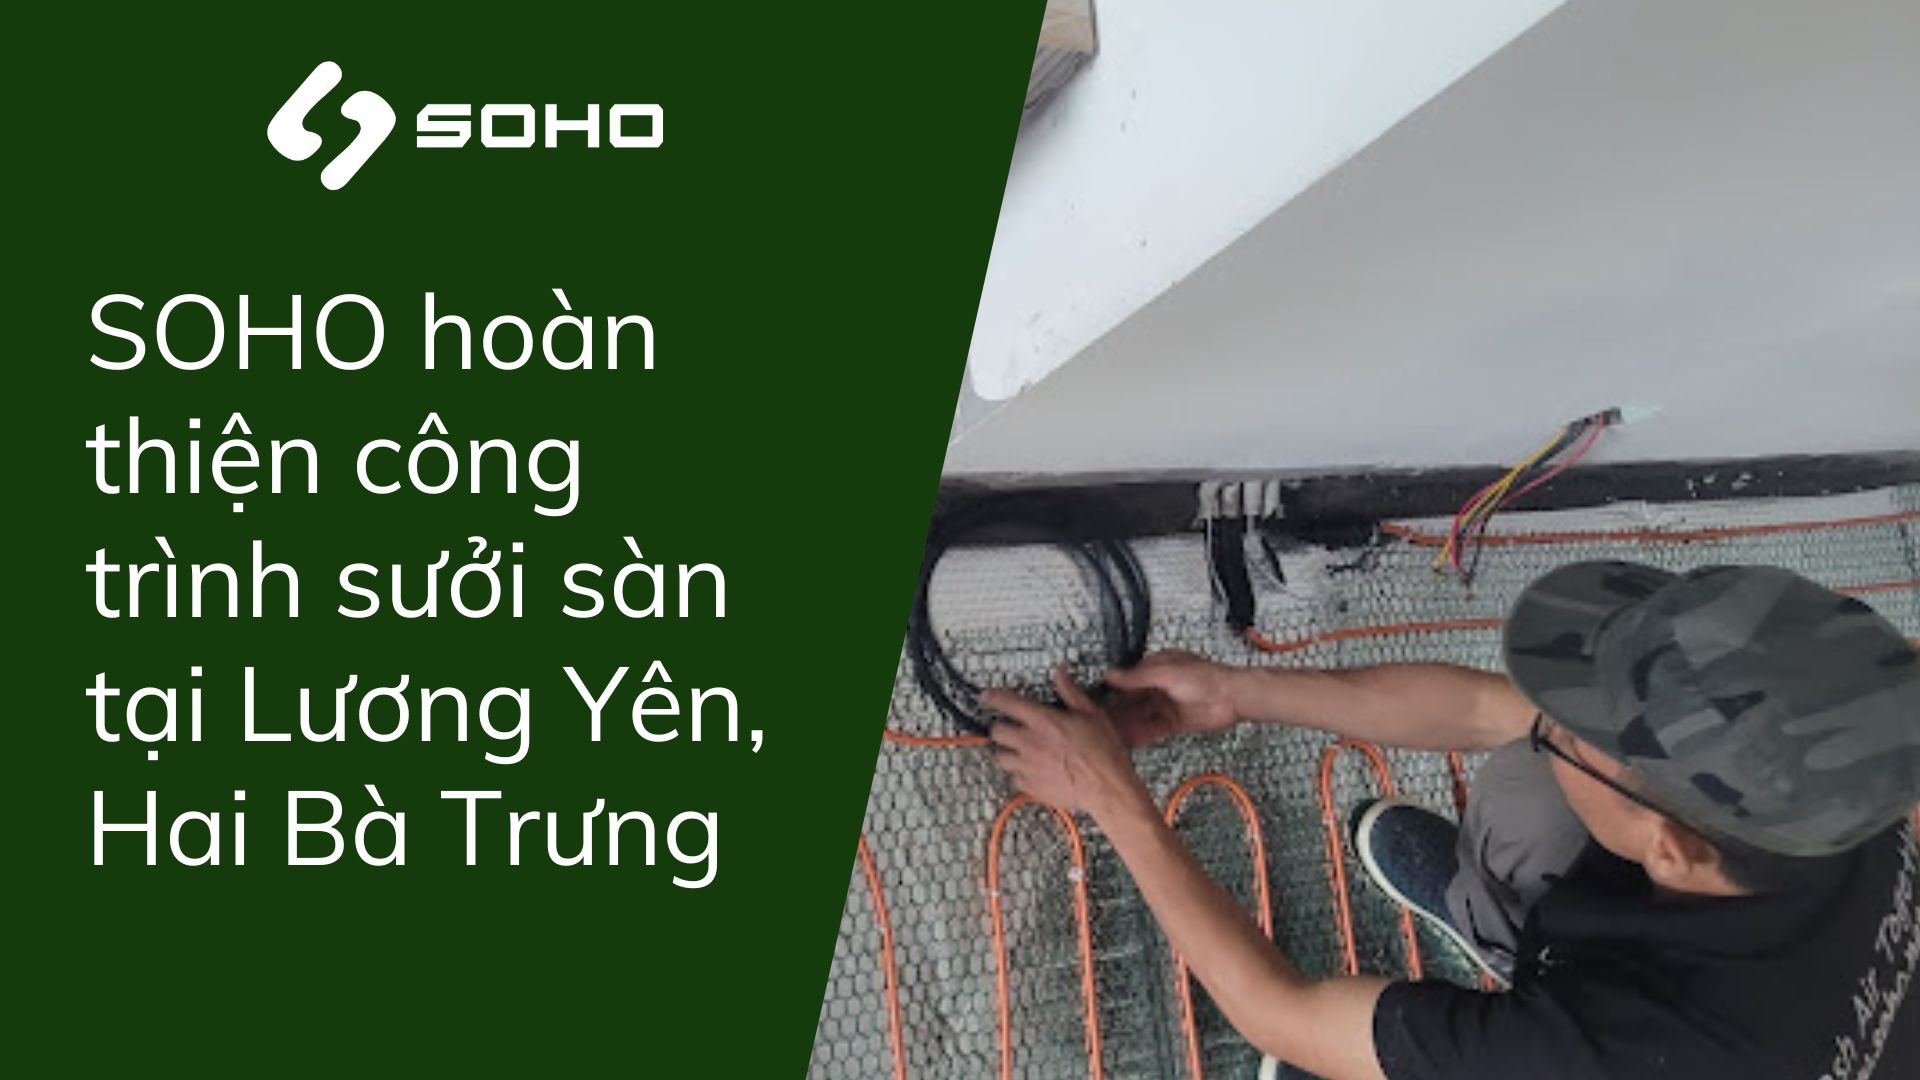  Hoàn thiện công trình sưởi sàn tại Lương Yên, Hai Bà Trưng